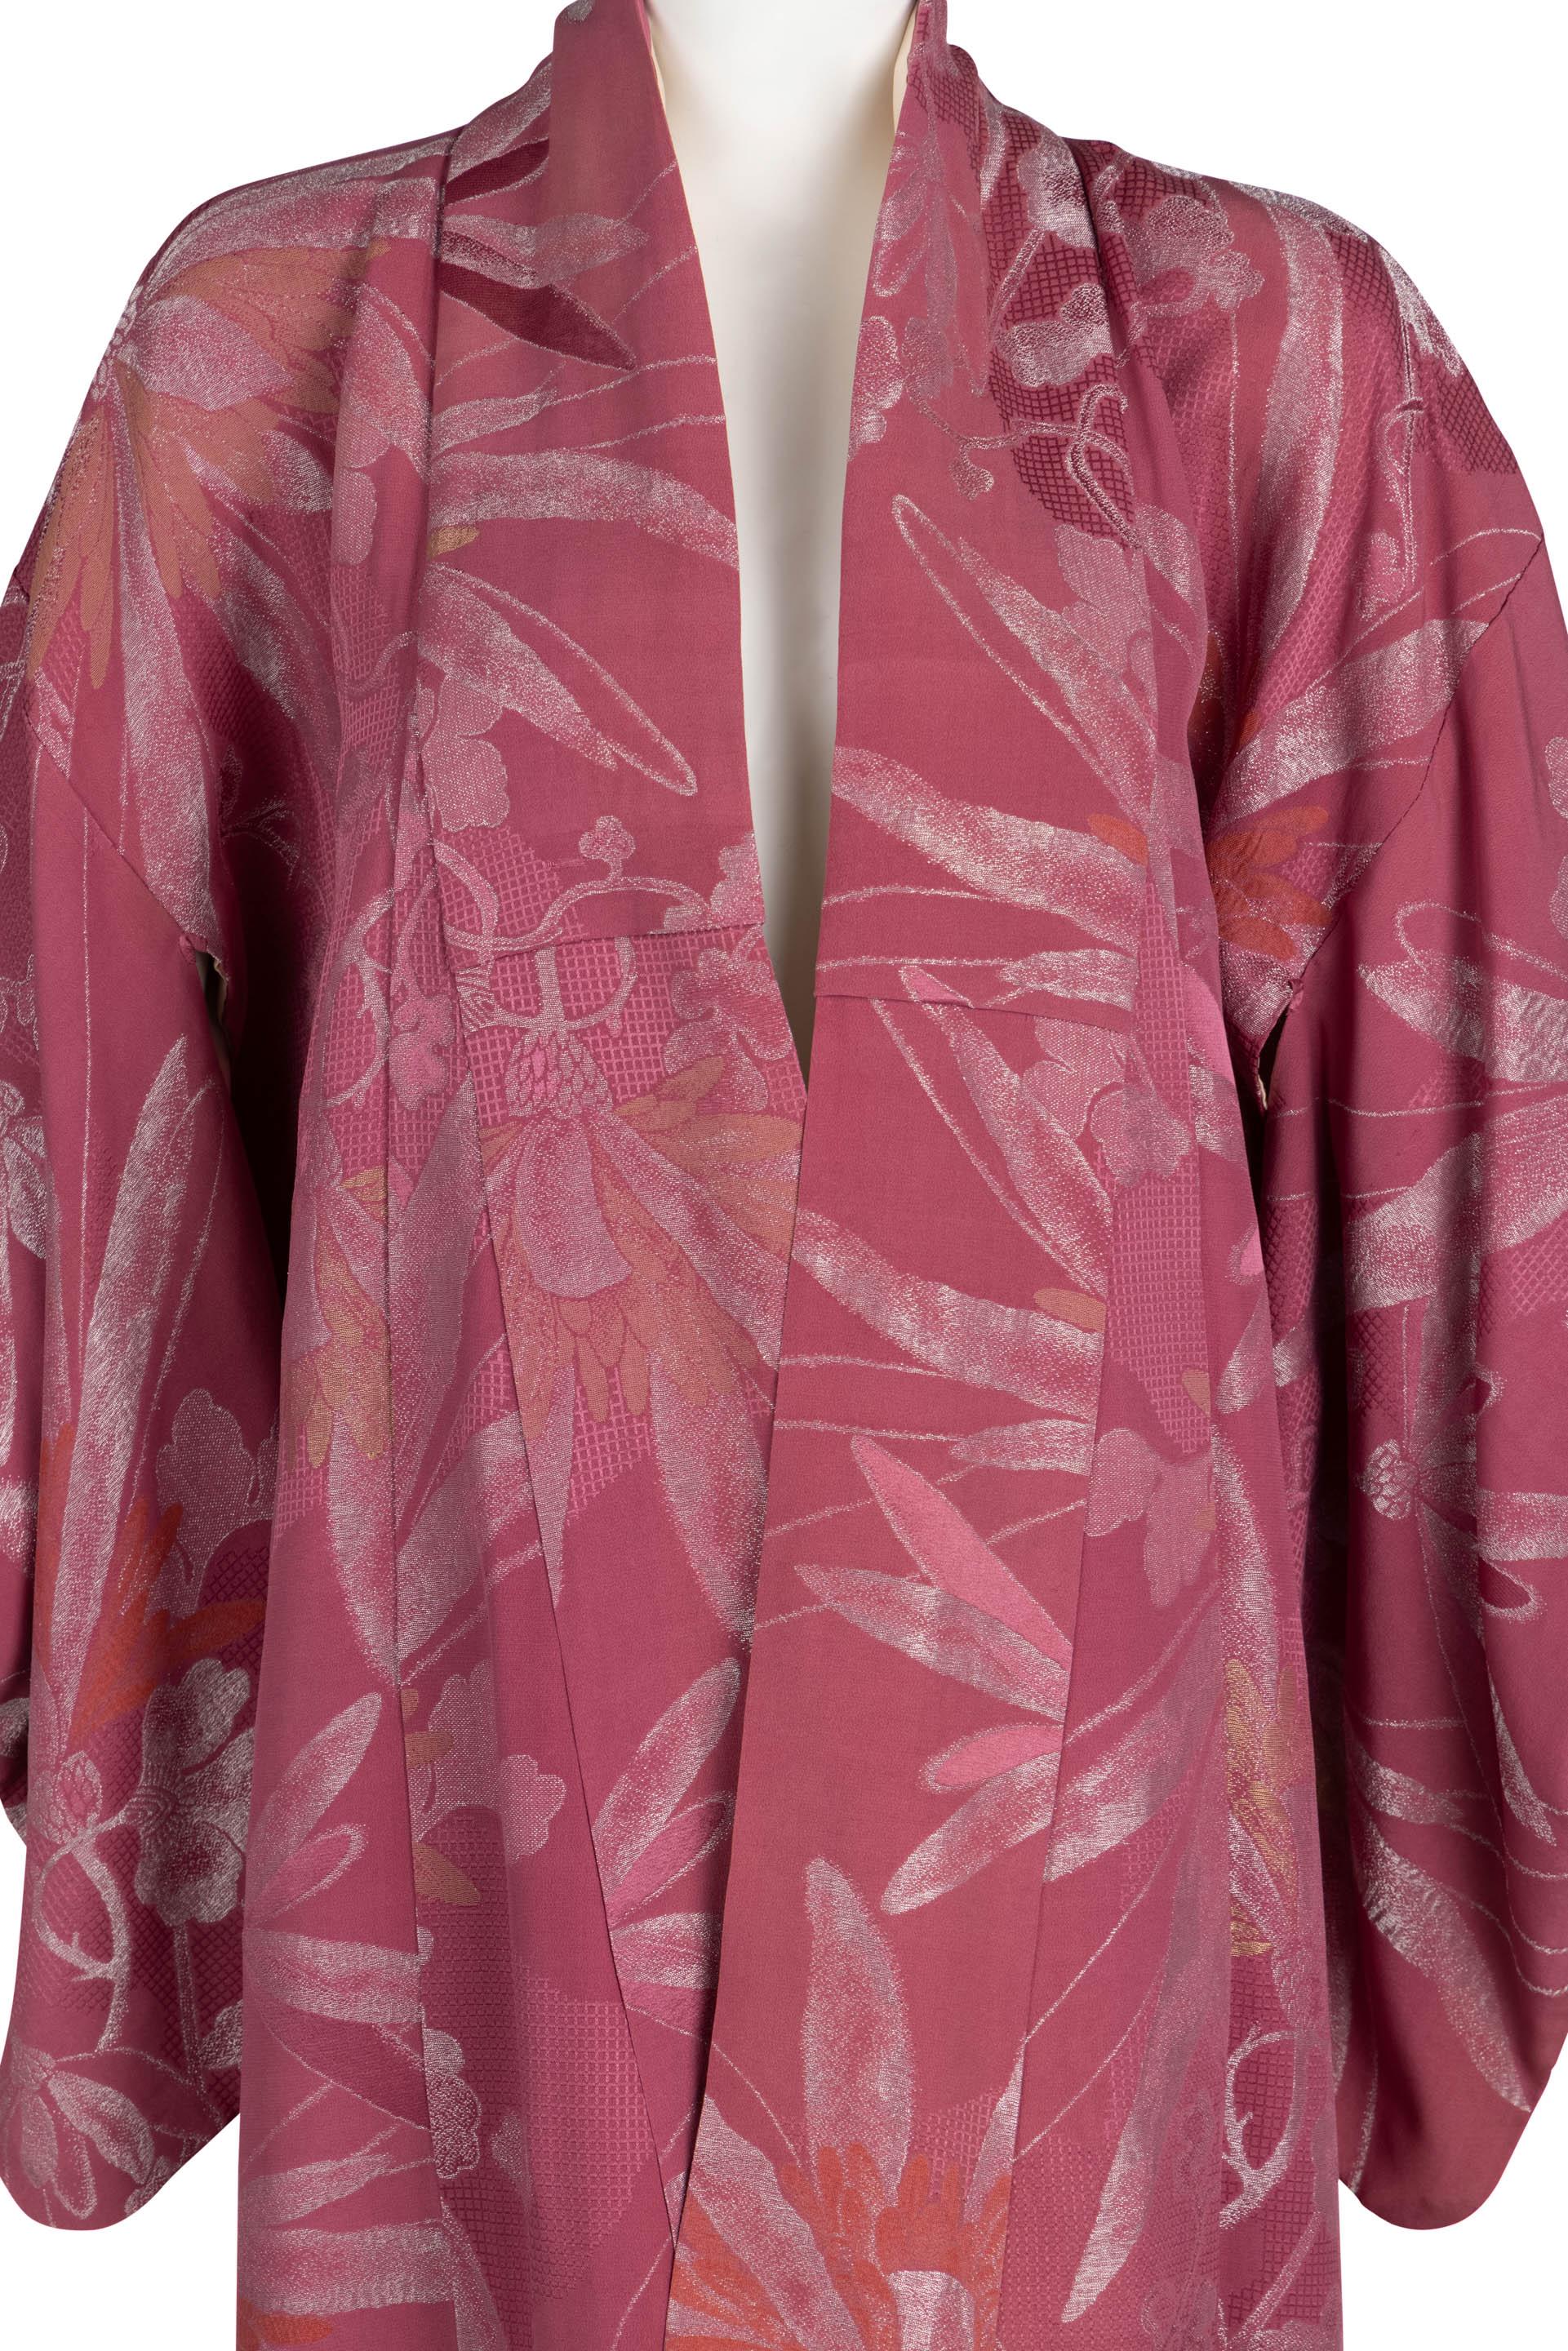 Women's or Men's Vintage Japanese Dusky Mauve Silk Metallic Floral Maxi Kimono